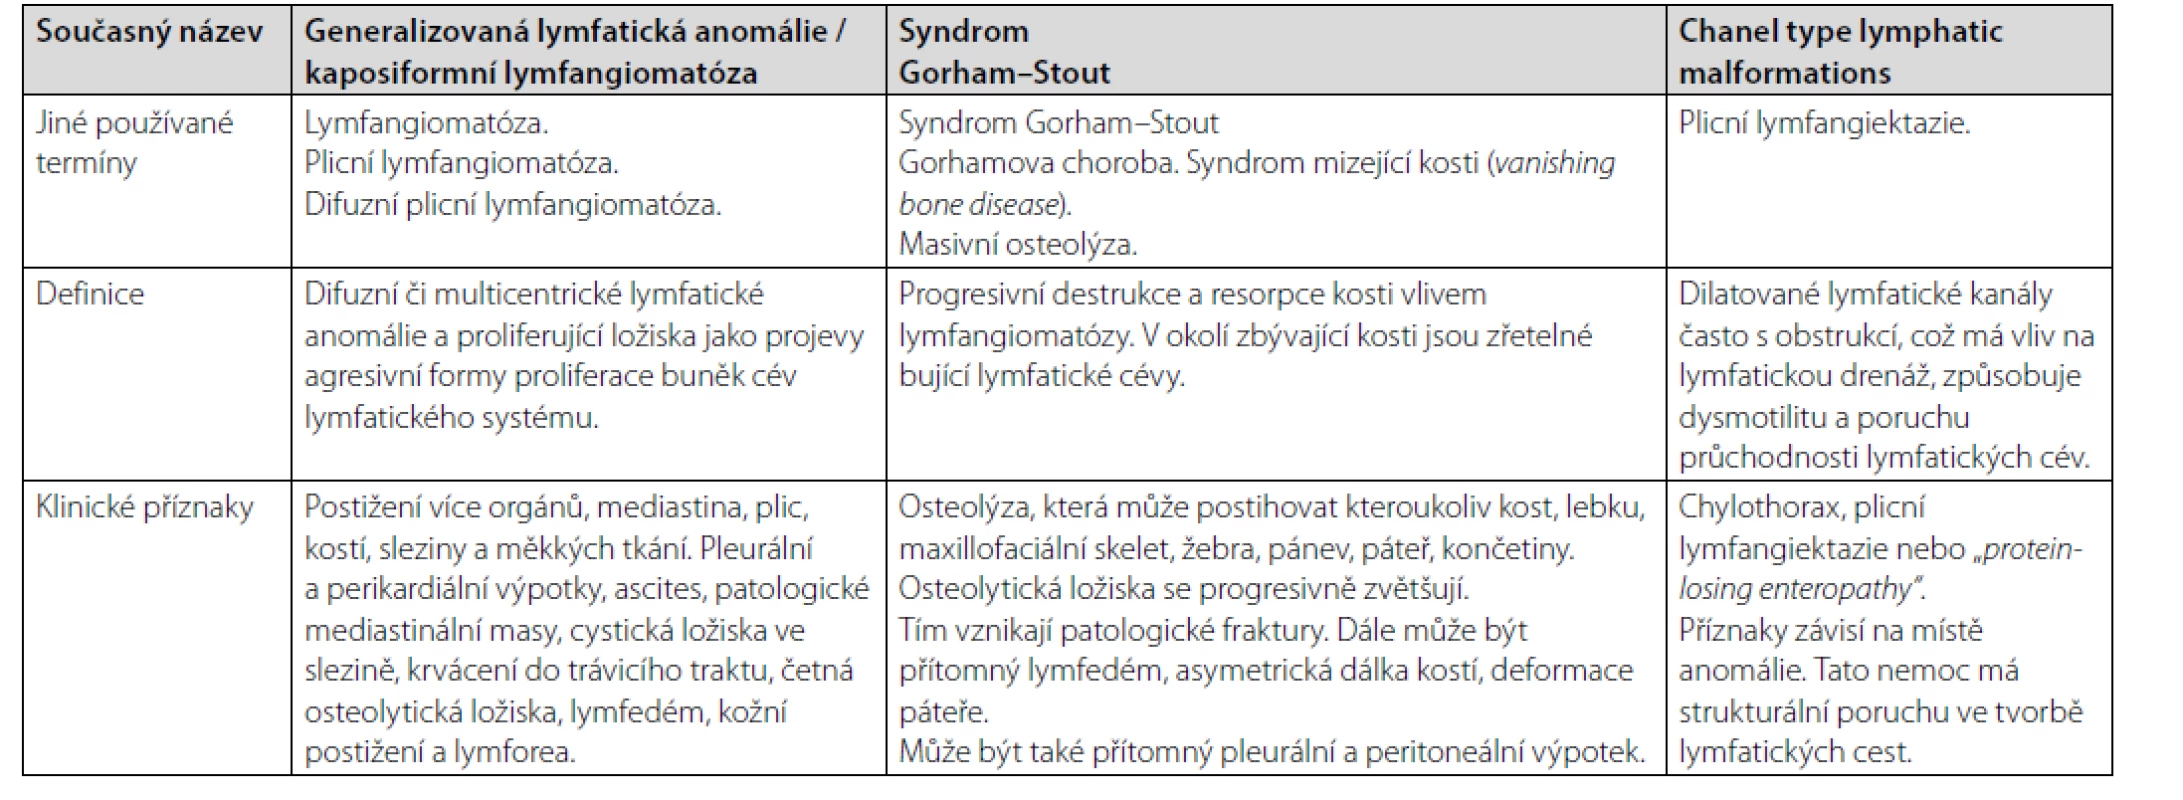 Charakteristika klinických jednotek spadající do kategorie lymfangiomatózy, tedy generalizované lymfatické anomálie